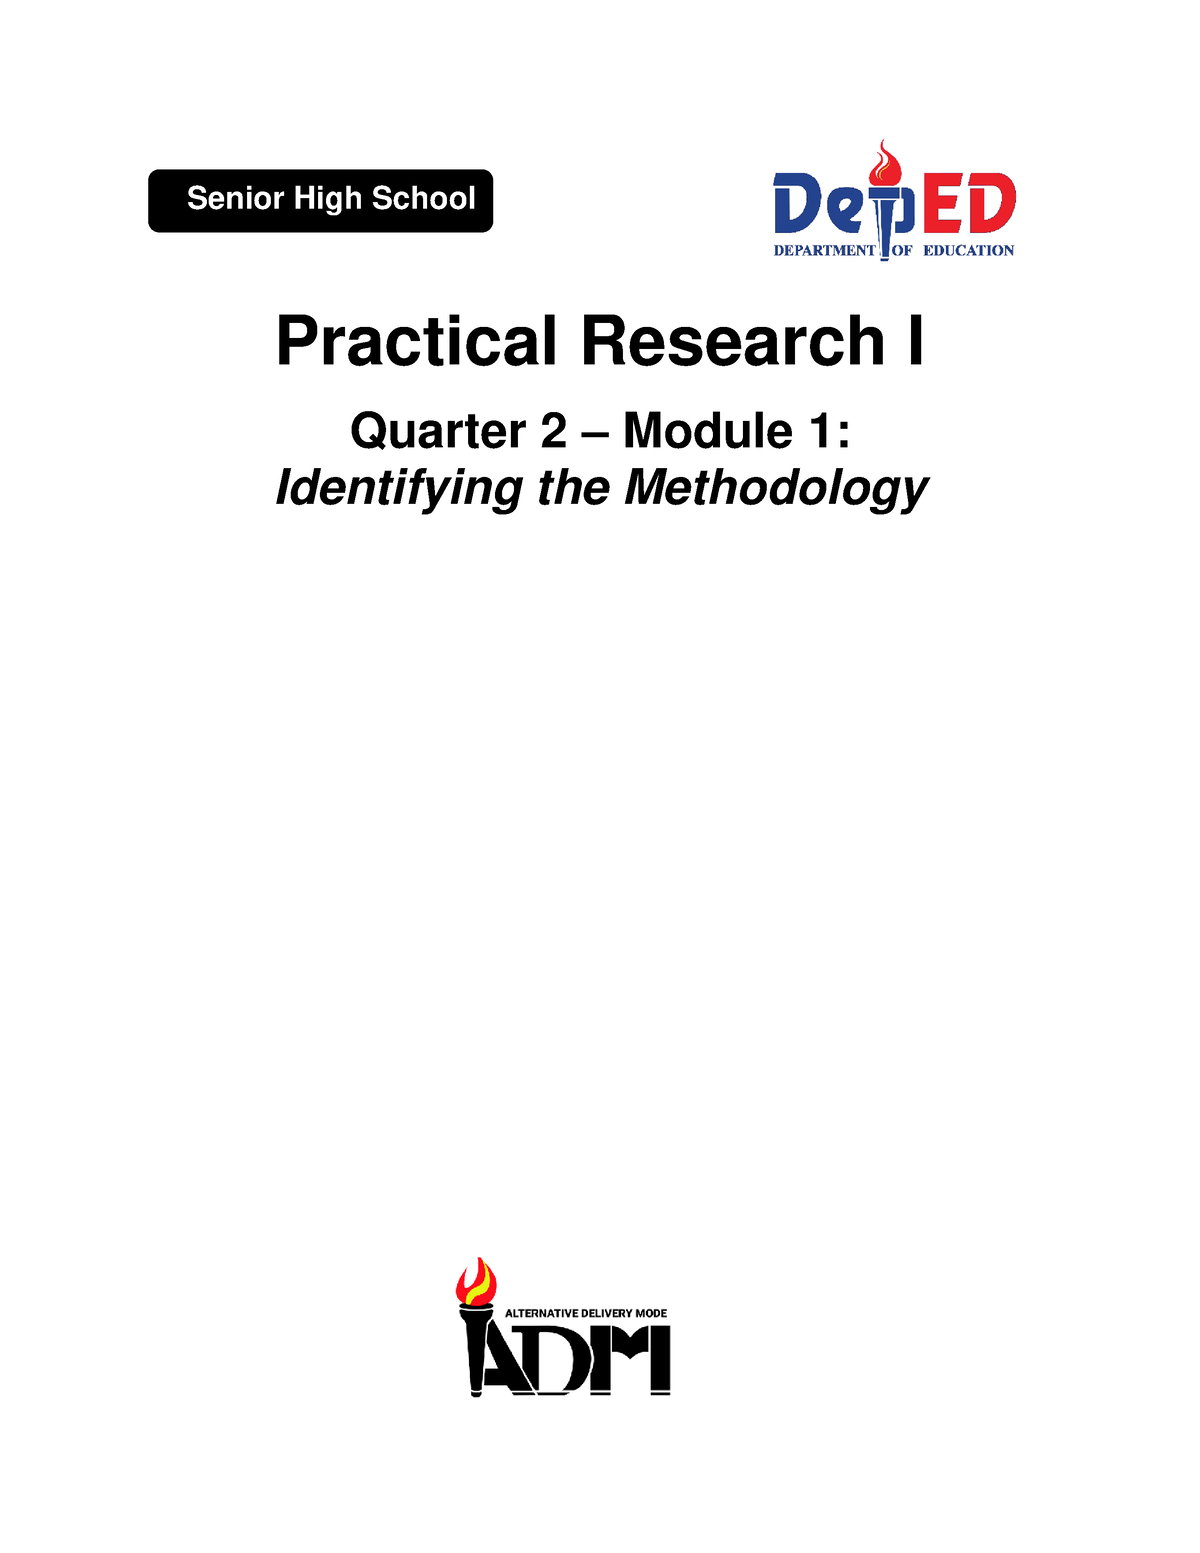 research 8 quarter 3 module 1